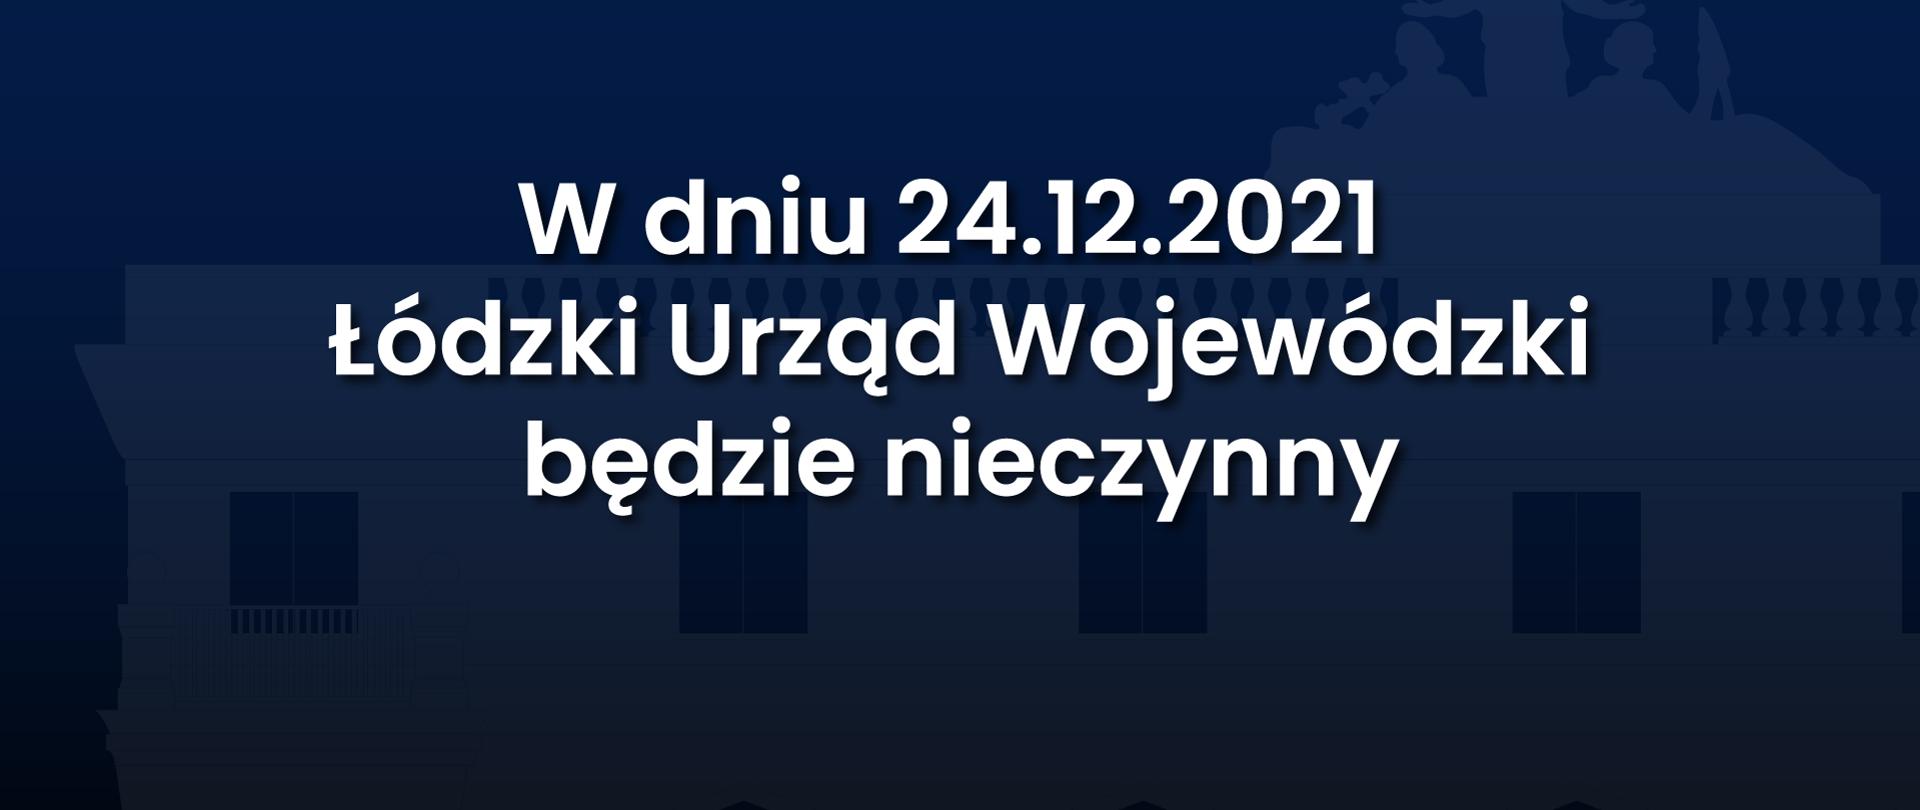 Łódzki Urząd Wojewódzki 24.12.2021 będzie nieczynny